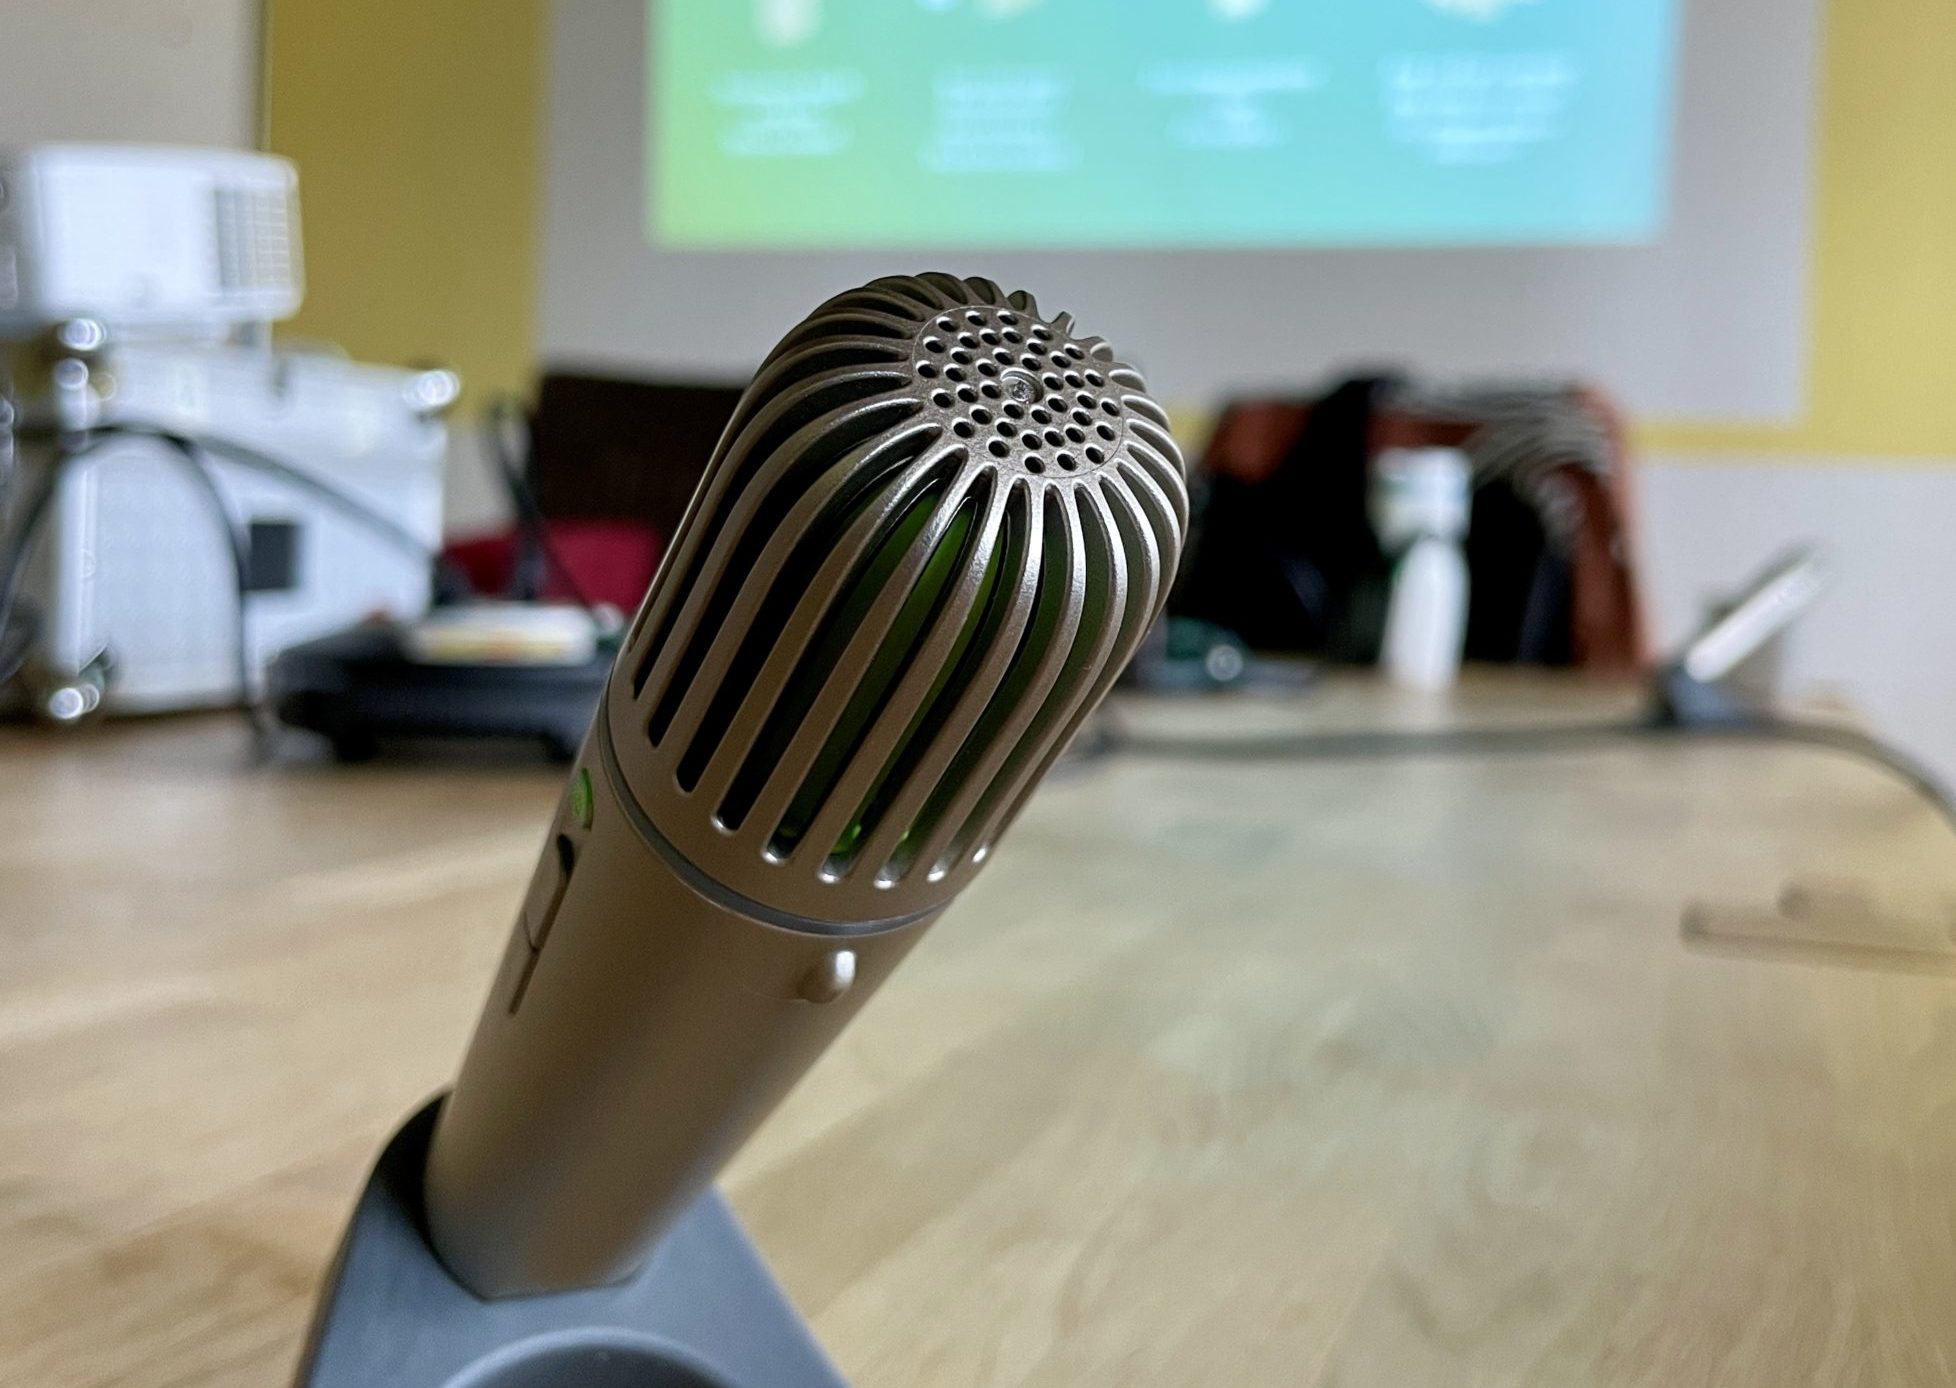 Die FM-Anlage besteht aus mehreren Mikrofonen, eines hier im Bild auf einem Konferenztisch zu sehen.